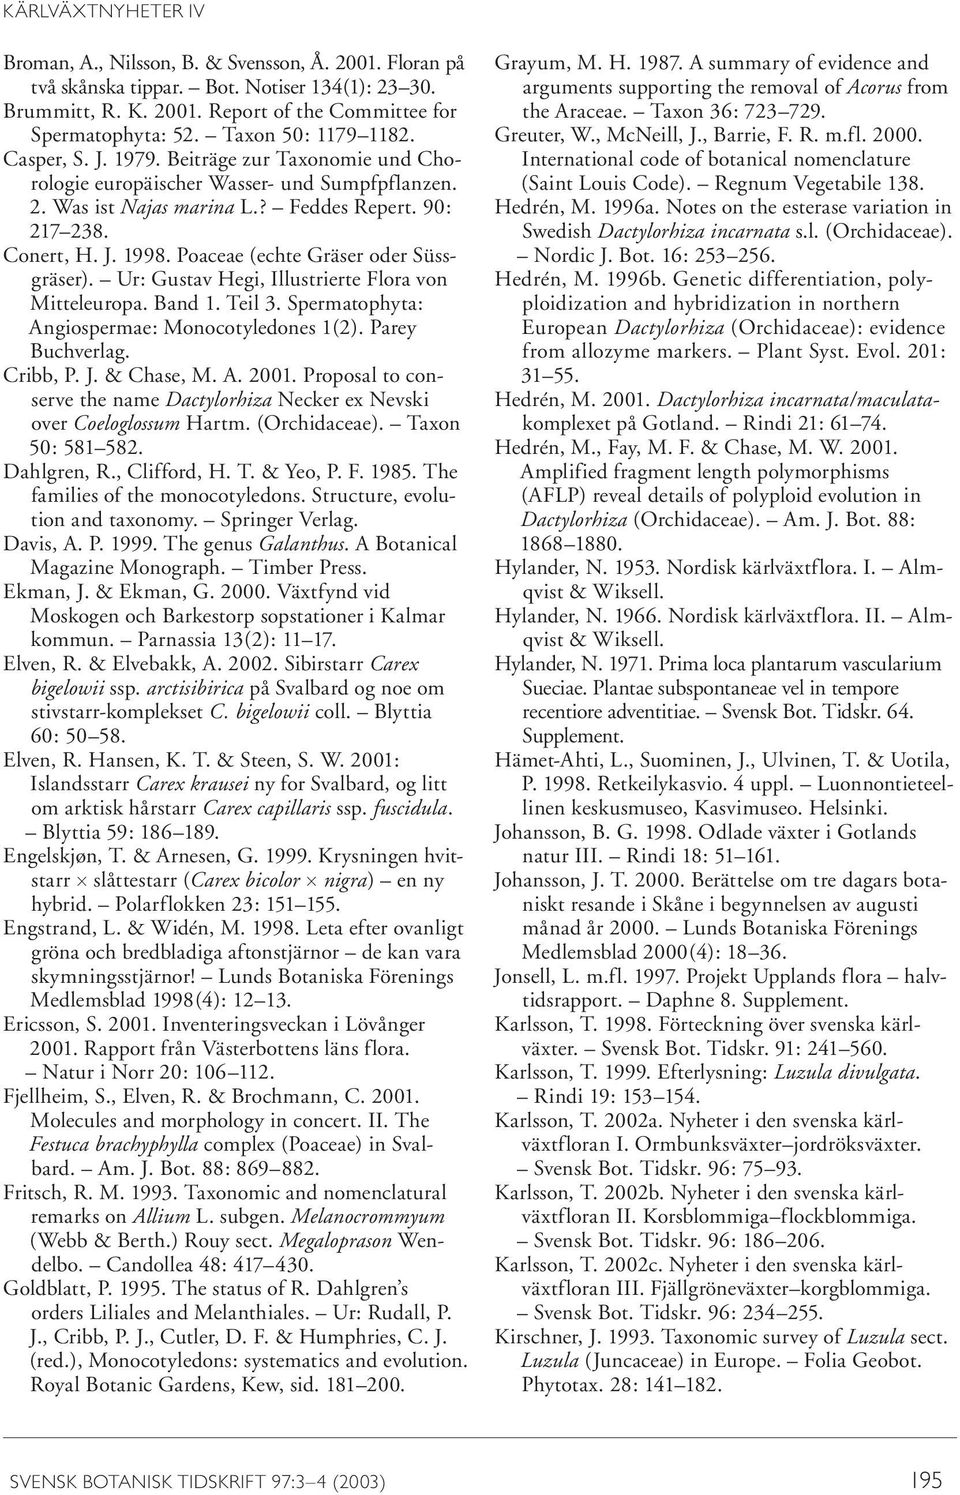 Poaceae (echte Gräser oder Süssgräser). Ur: Gustav Hegi, Illustrierte Flora von Mitteleuropa. Band 1. Teil 3. Spermatophyta: Angiospermae: Monocotyledones 1(2). Parey Buchverlag. Cribb, P. J.